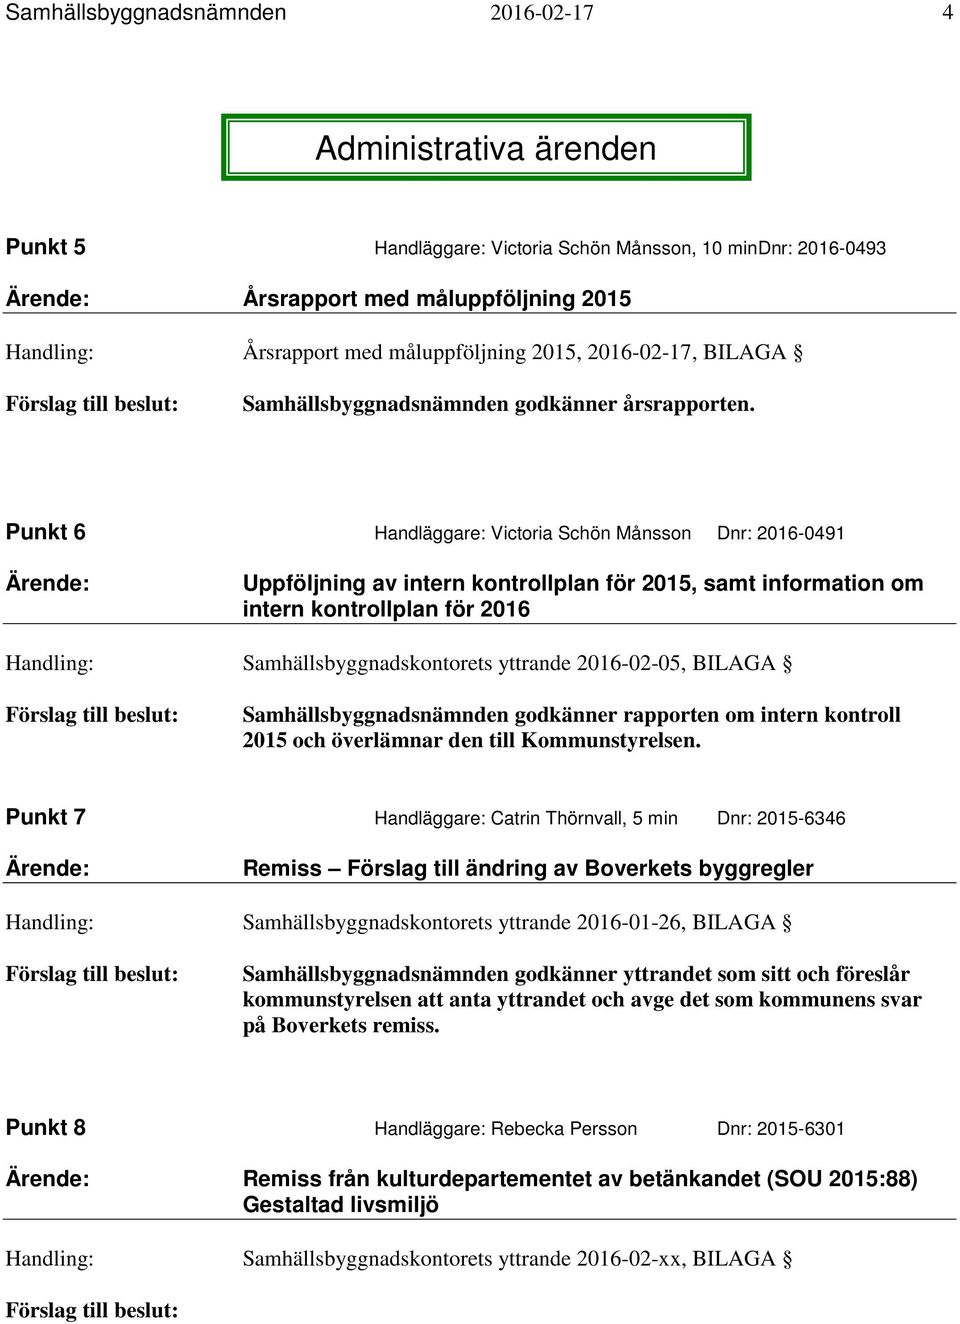 Punkt 6 Handläggare: Victoria Schön Månsson Dnr: 2016-0491 Ärende: Uppföljning av intern kontrollplan för 2015, samt information om intern kontrollplan för 2016 Handling: Samhällsbyggnadskontorets